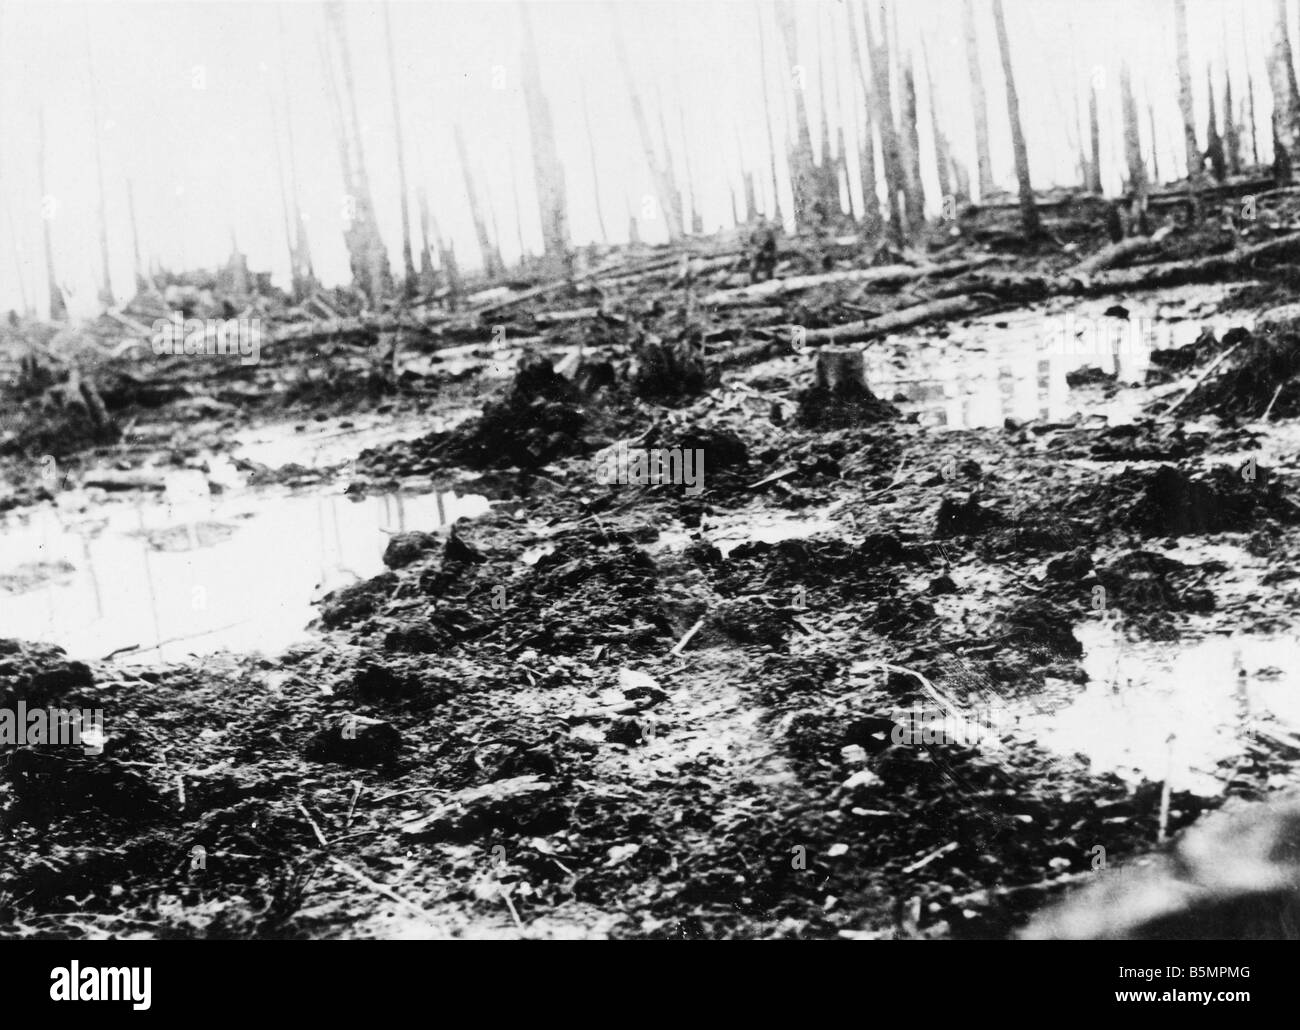 9 1916 318 A1 8 E Bataille de Battlefield 1916 Postawy World War 1 Front de l'est la défaite des troupes russes après une offensive sur t Banque D'Images